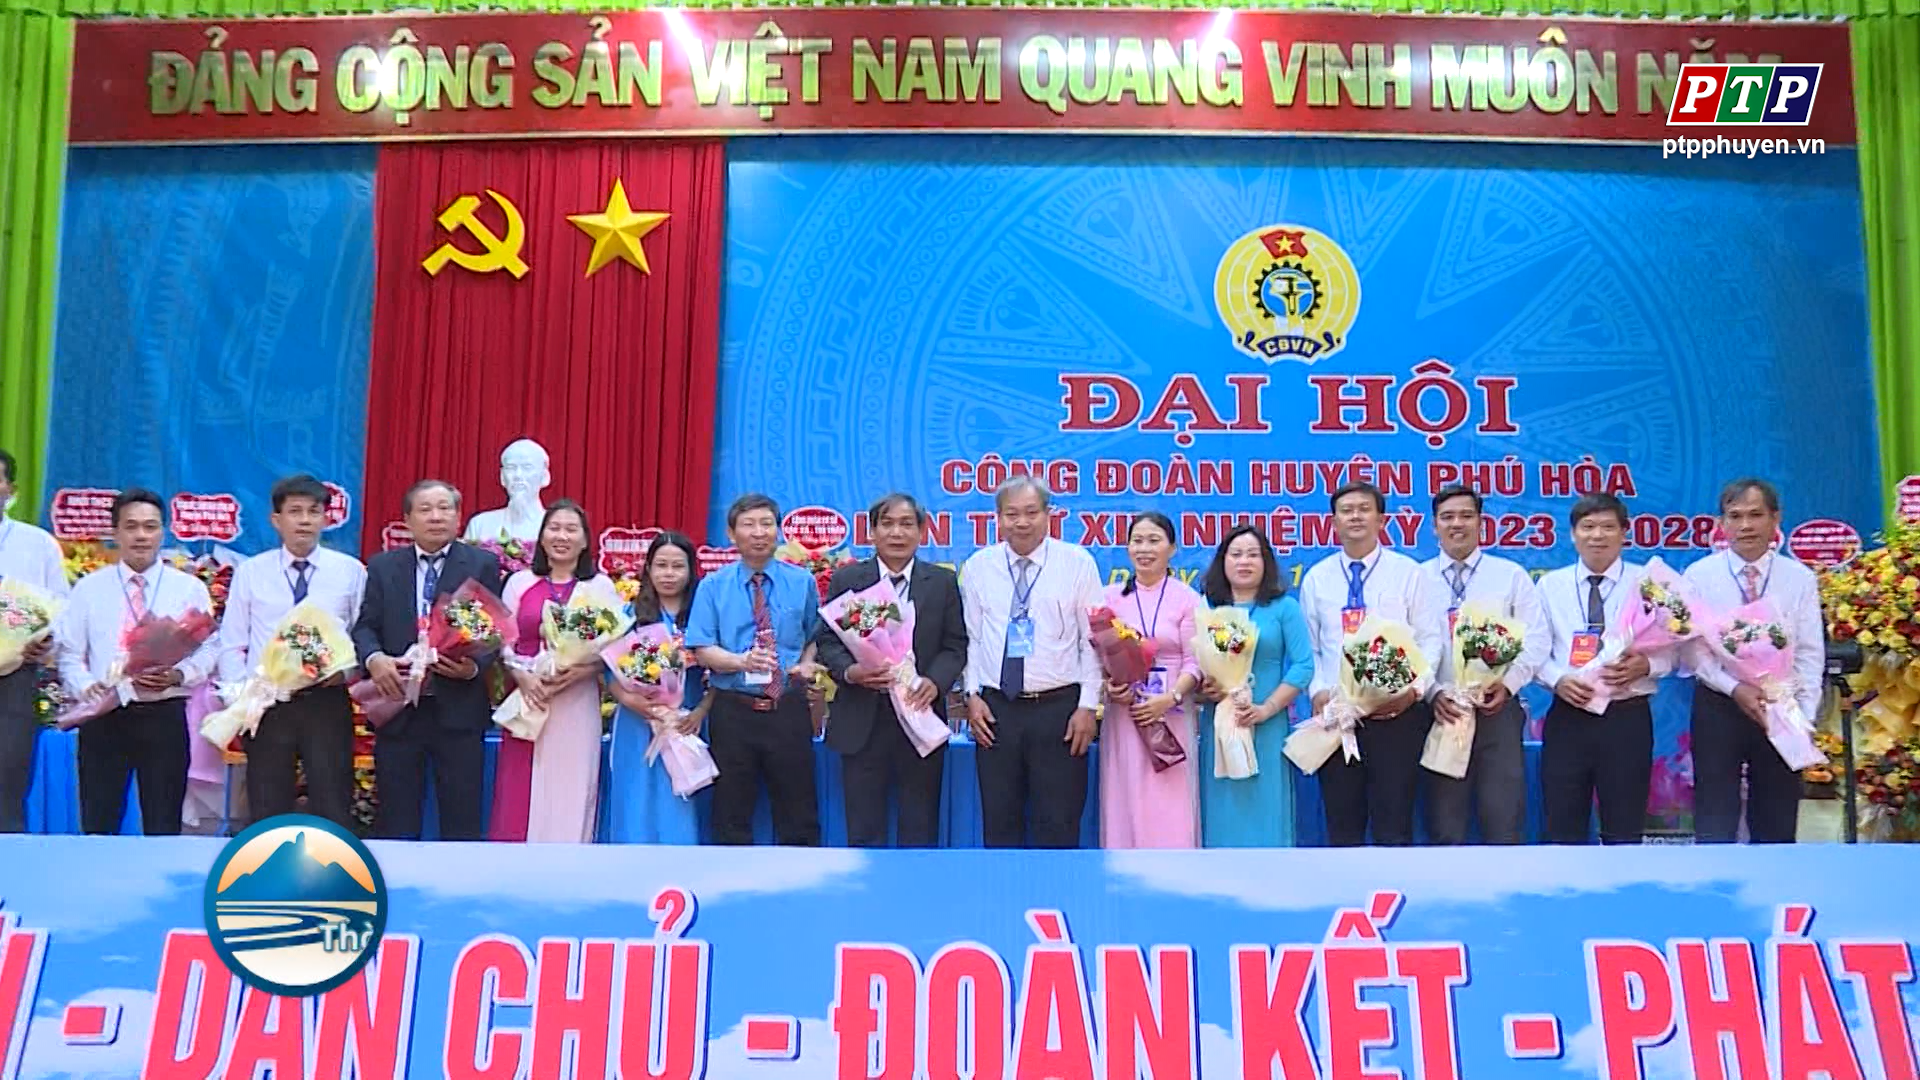 Đại hội Công đoàn huyện Phú Hòa lần thứ XIV, nhiệm kỳ 2023-2028